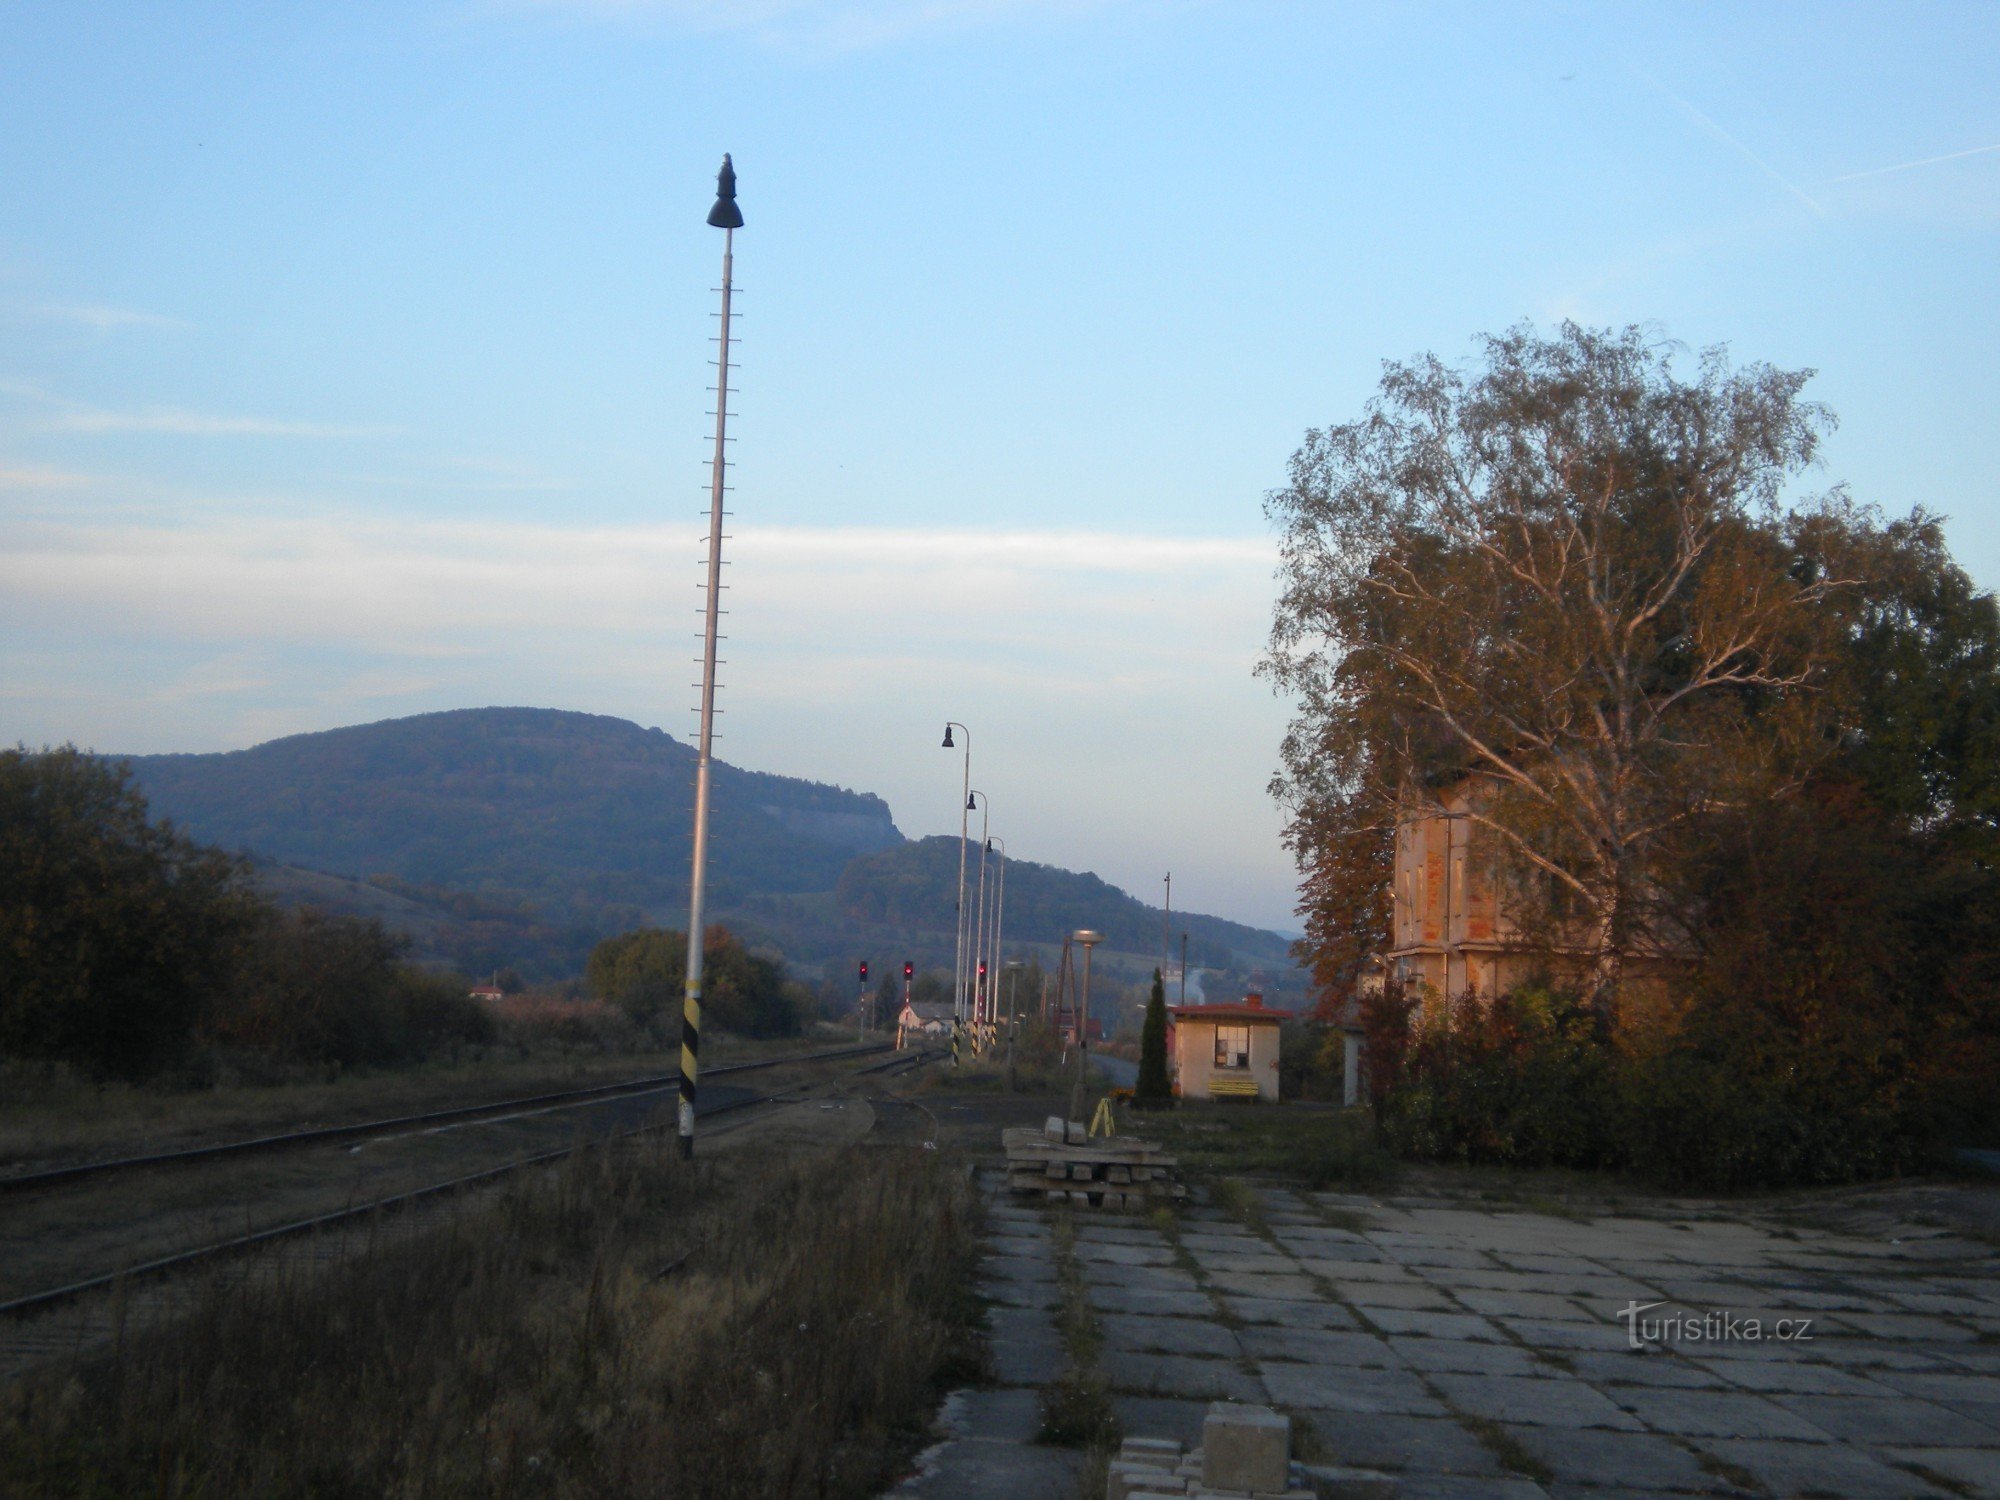 Σιδηροδρομικός σταθμός Chotimeř.